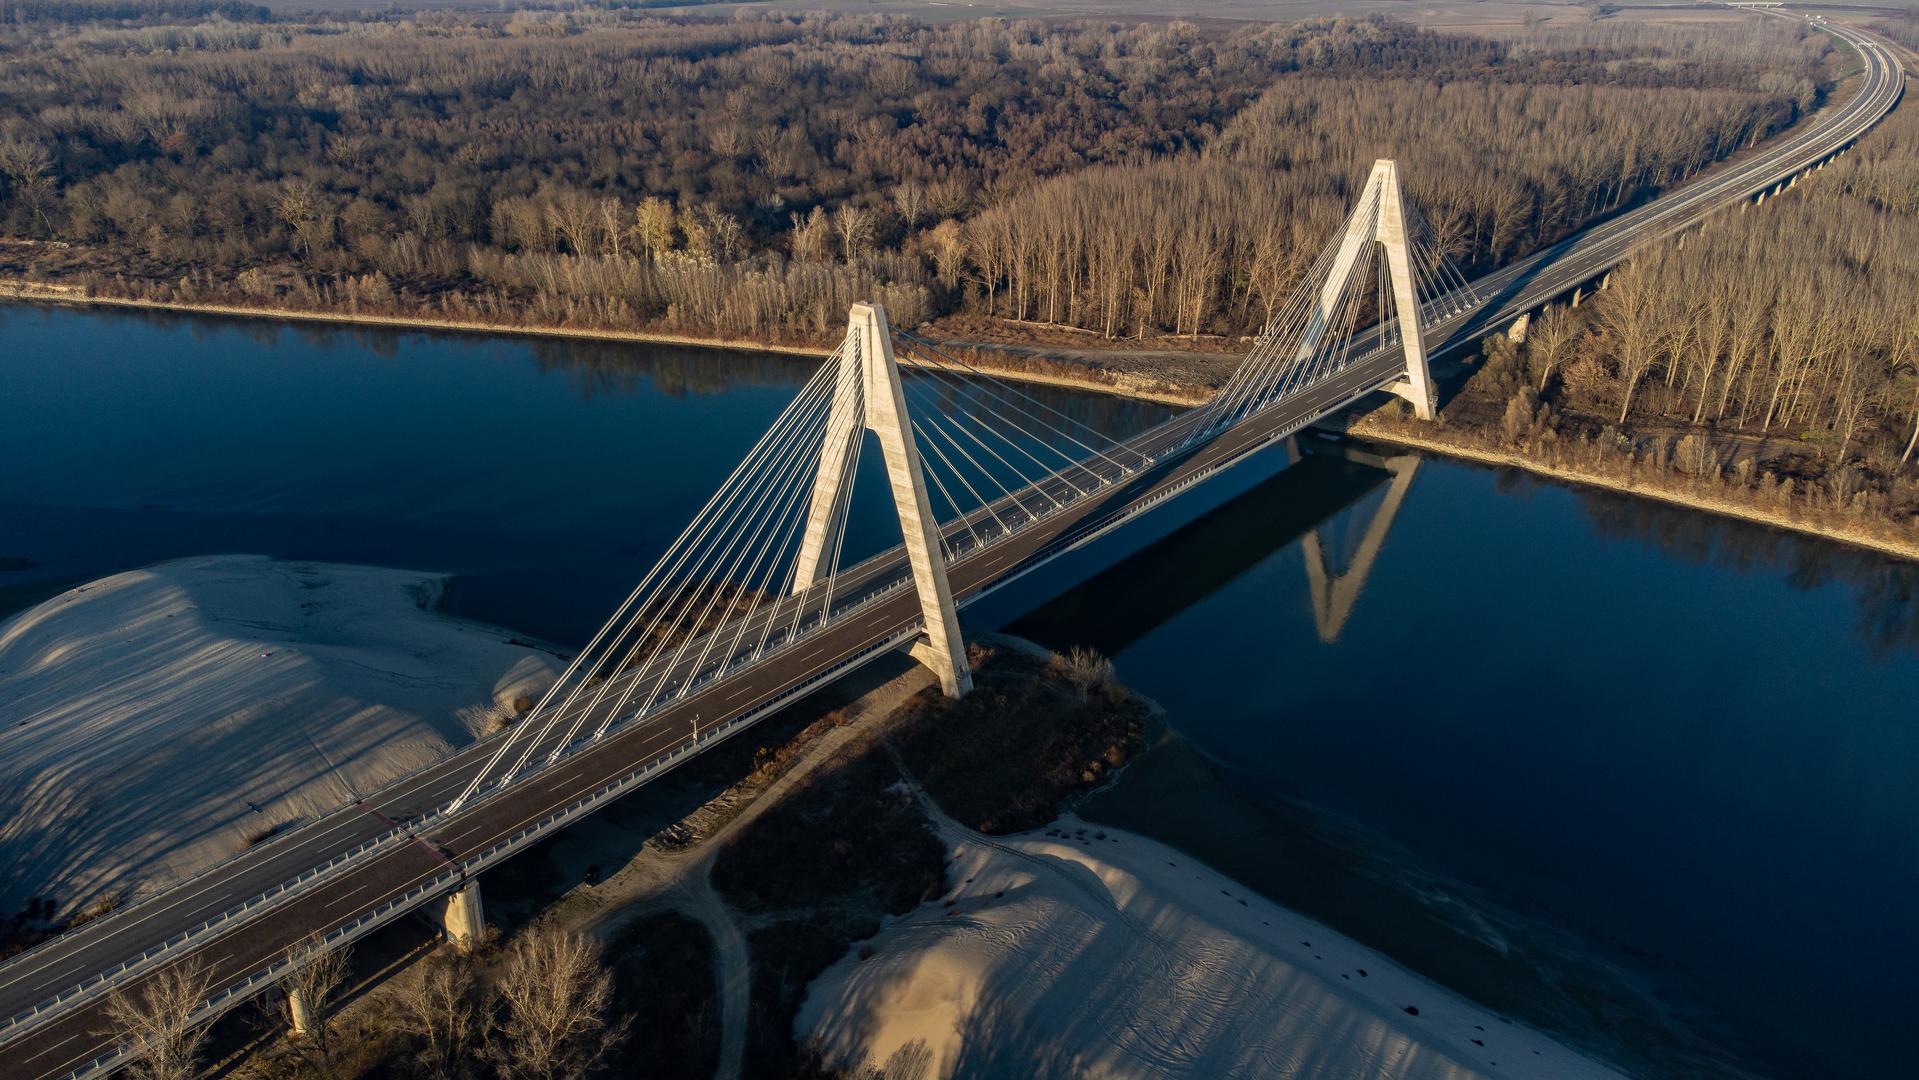 Službeno mu je ime Most 3. gardijske brigade Kune, nalazi se na Koridoru 5C, a ta je dionica u promet puštena pretprošle godine. Most je godinama izazivao podsmjehe u javnosti jer je dovršen još 2016. godine, a vodio je ravno u polje. Ipak, to se promijenilo preklani kada je otvorena dionica autoceste od Osijeka do Belog Manastira. 